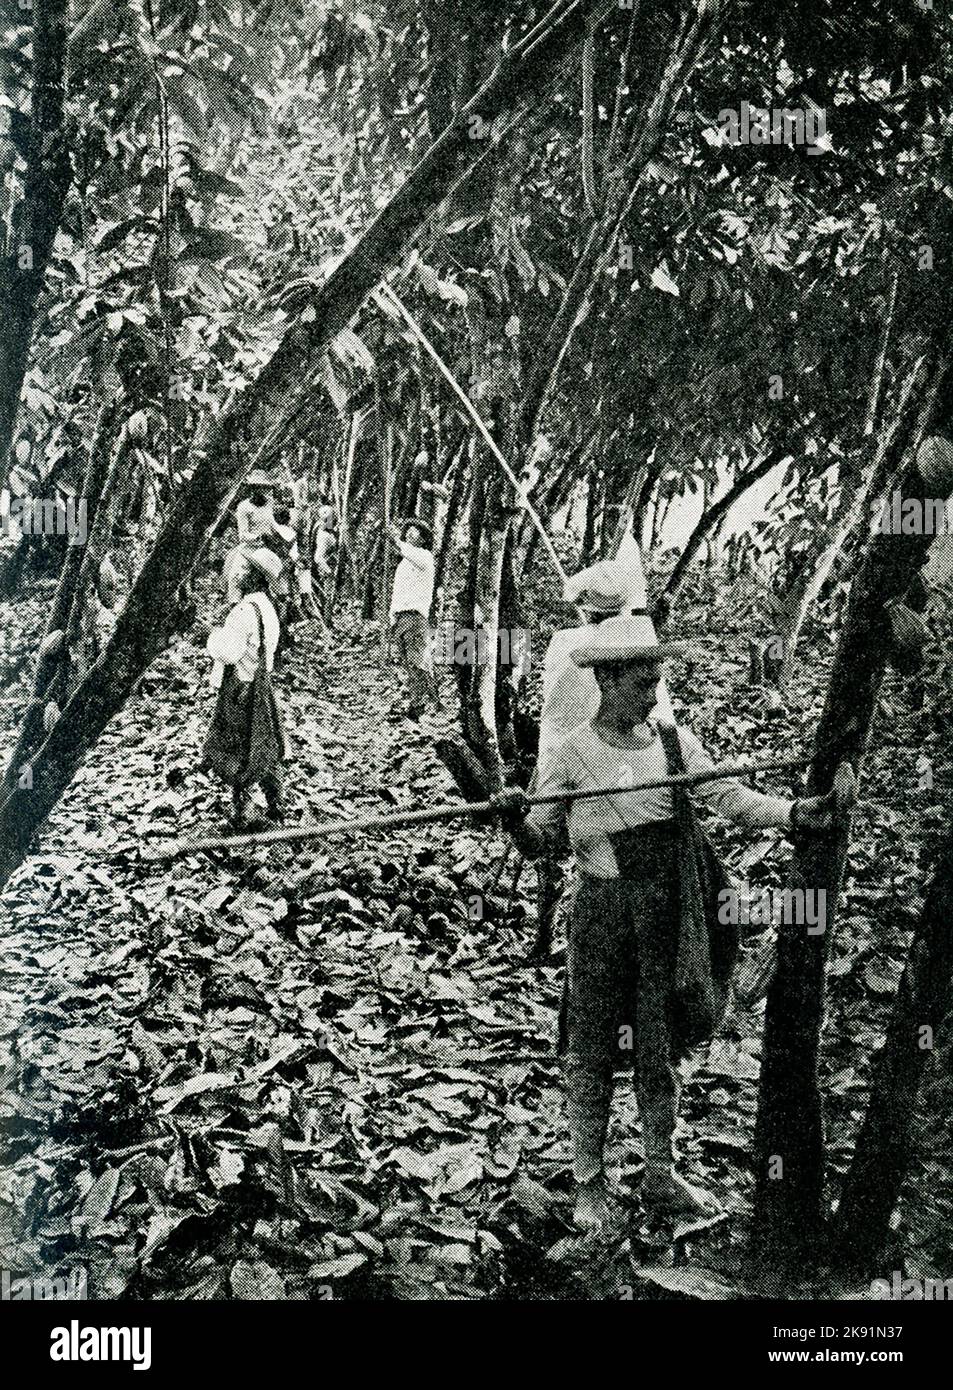 The 1914 caption reads: 'Ecuador - harvesting cacao.' Stock Photo